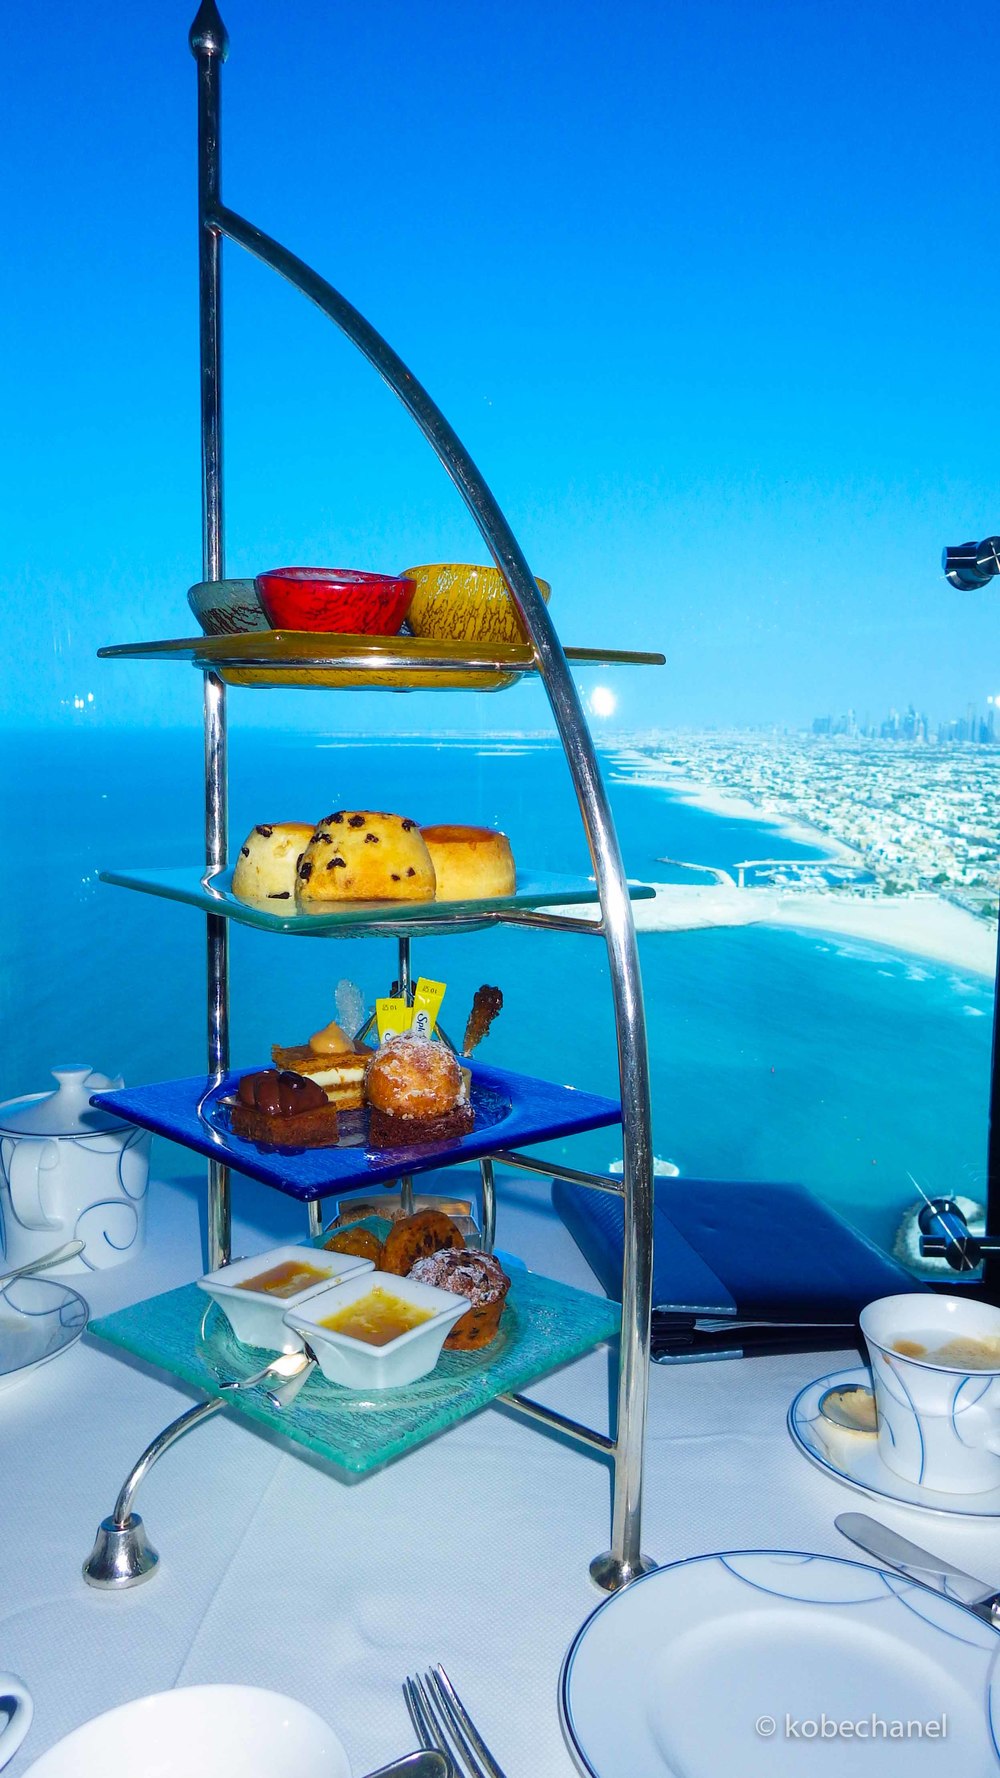 Afternoon tea at Skyview Bar at Burj Al Arab